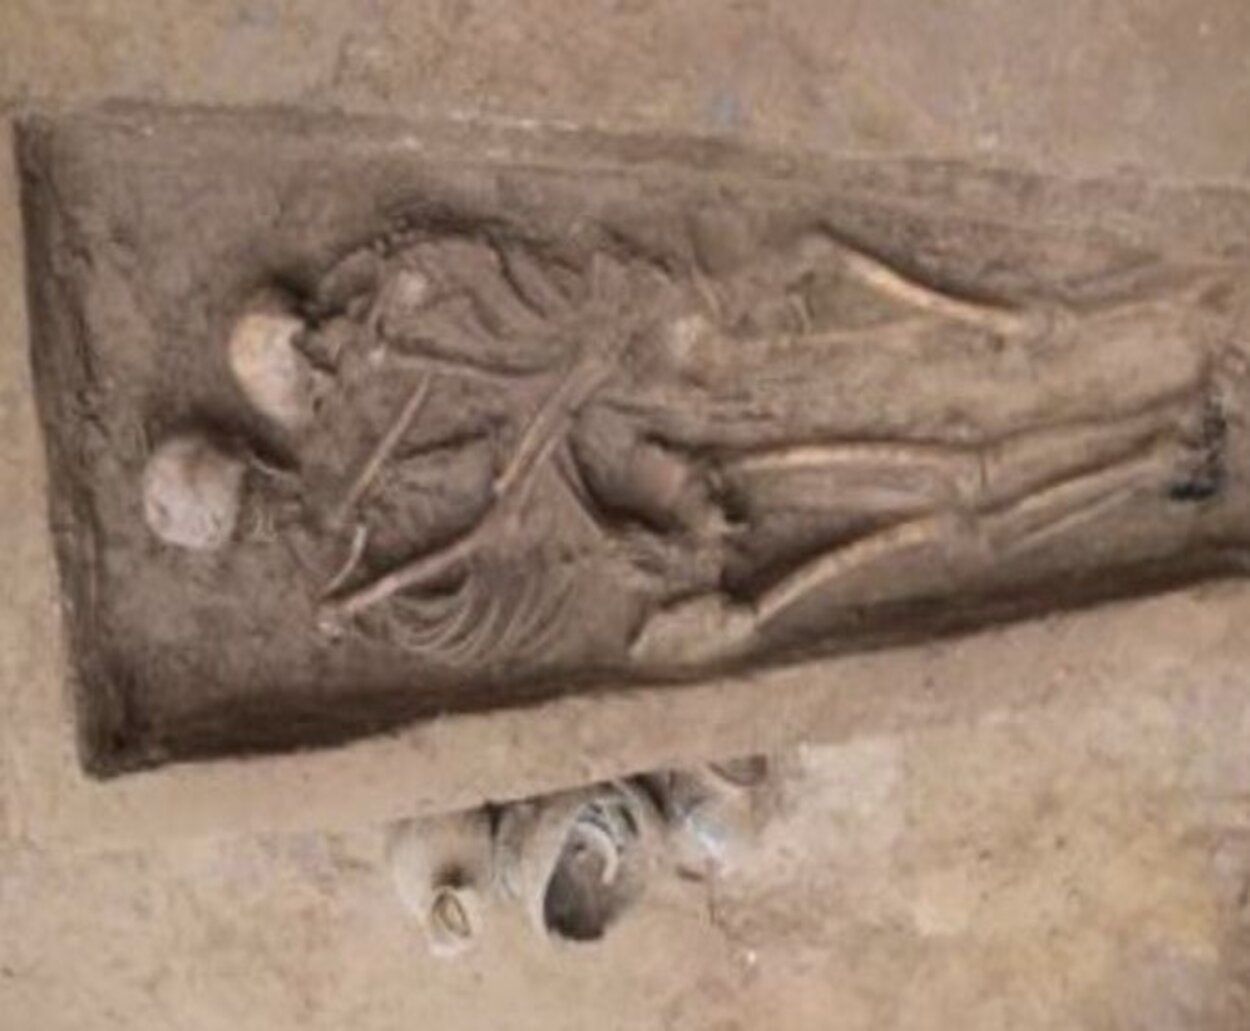 Abrazados desde hace 1.500 años: el entierro por amor descubierto en China